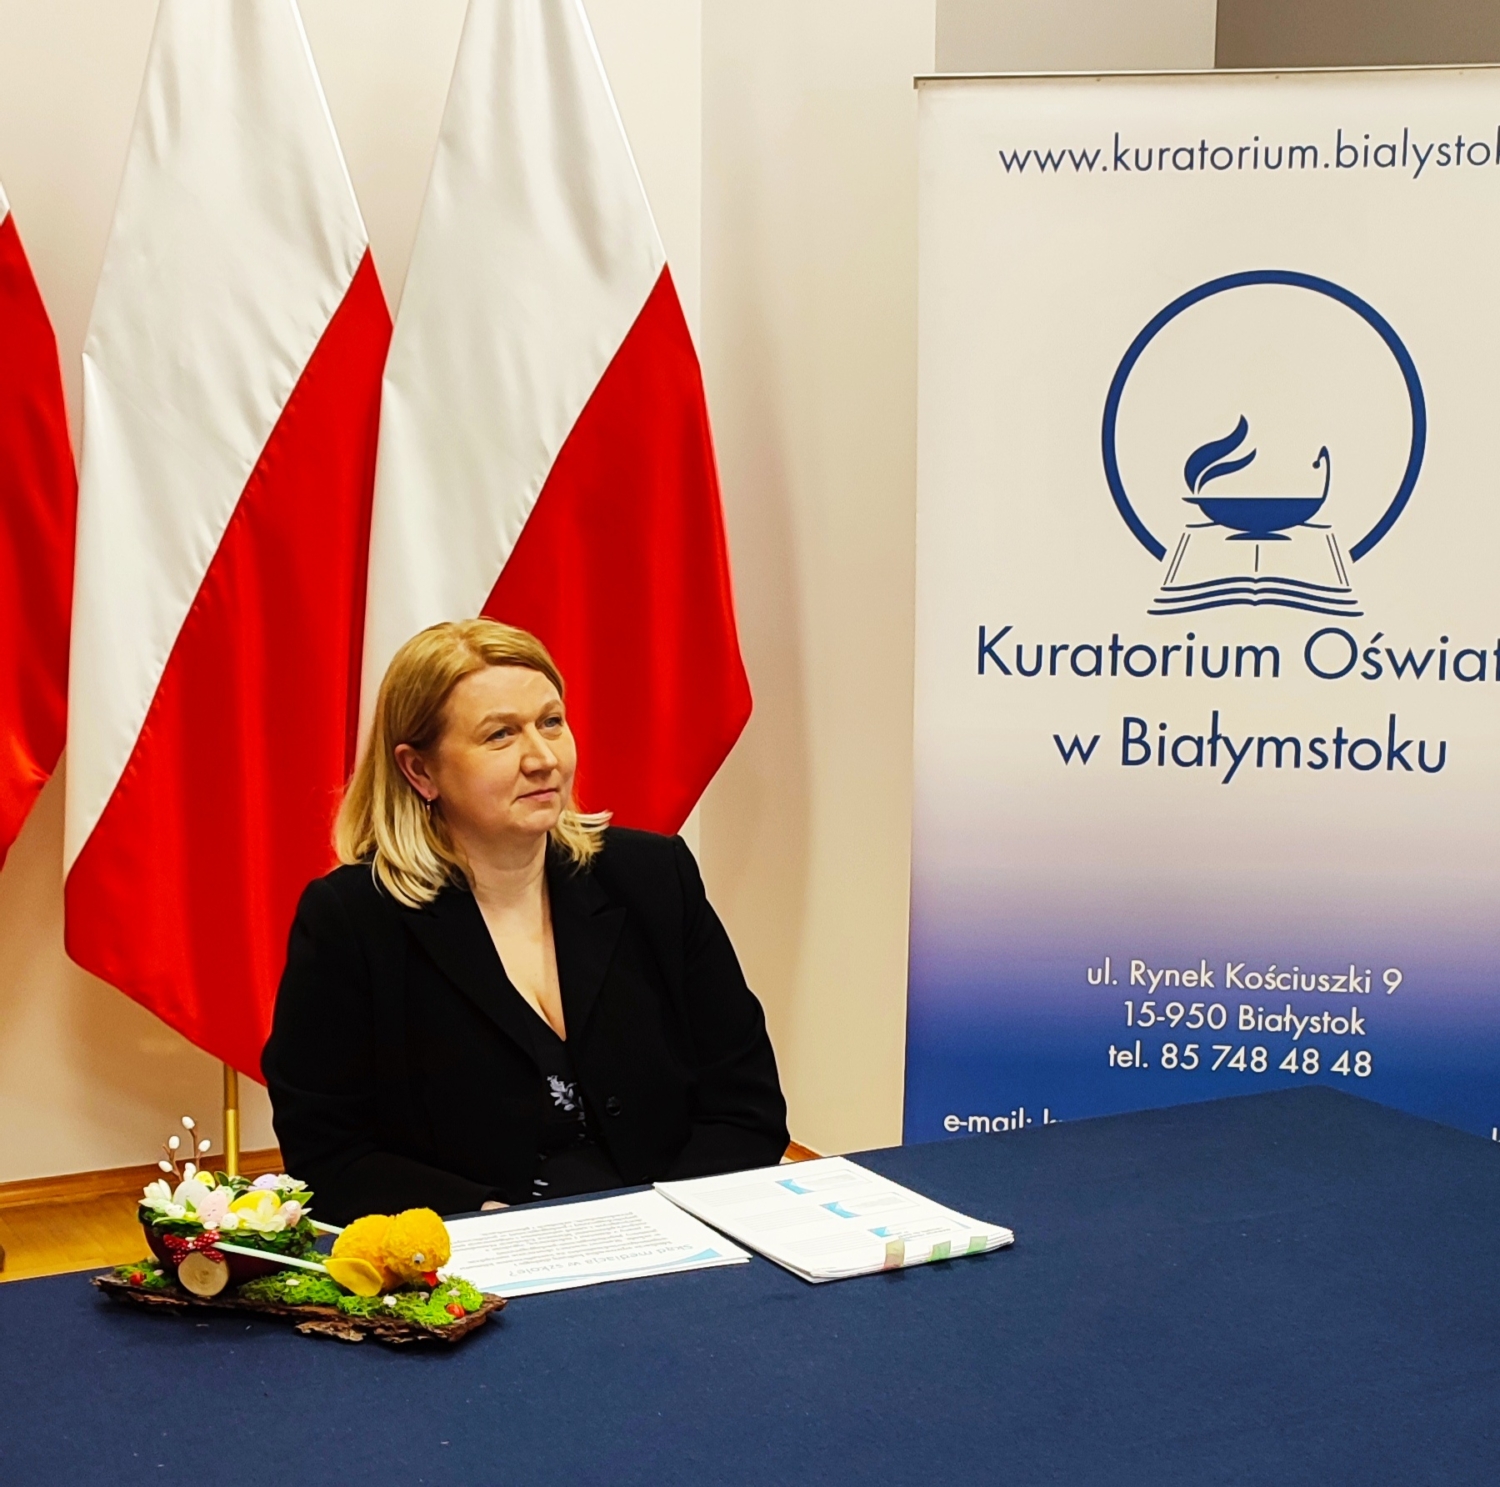 Pani Milena Kucharczyk – mediator sądowy siedzi przy stole na tle flag biało-czerwonych, z boku ustawiony baner z logo Kuratorium Oświaty w Białymstoku.